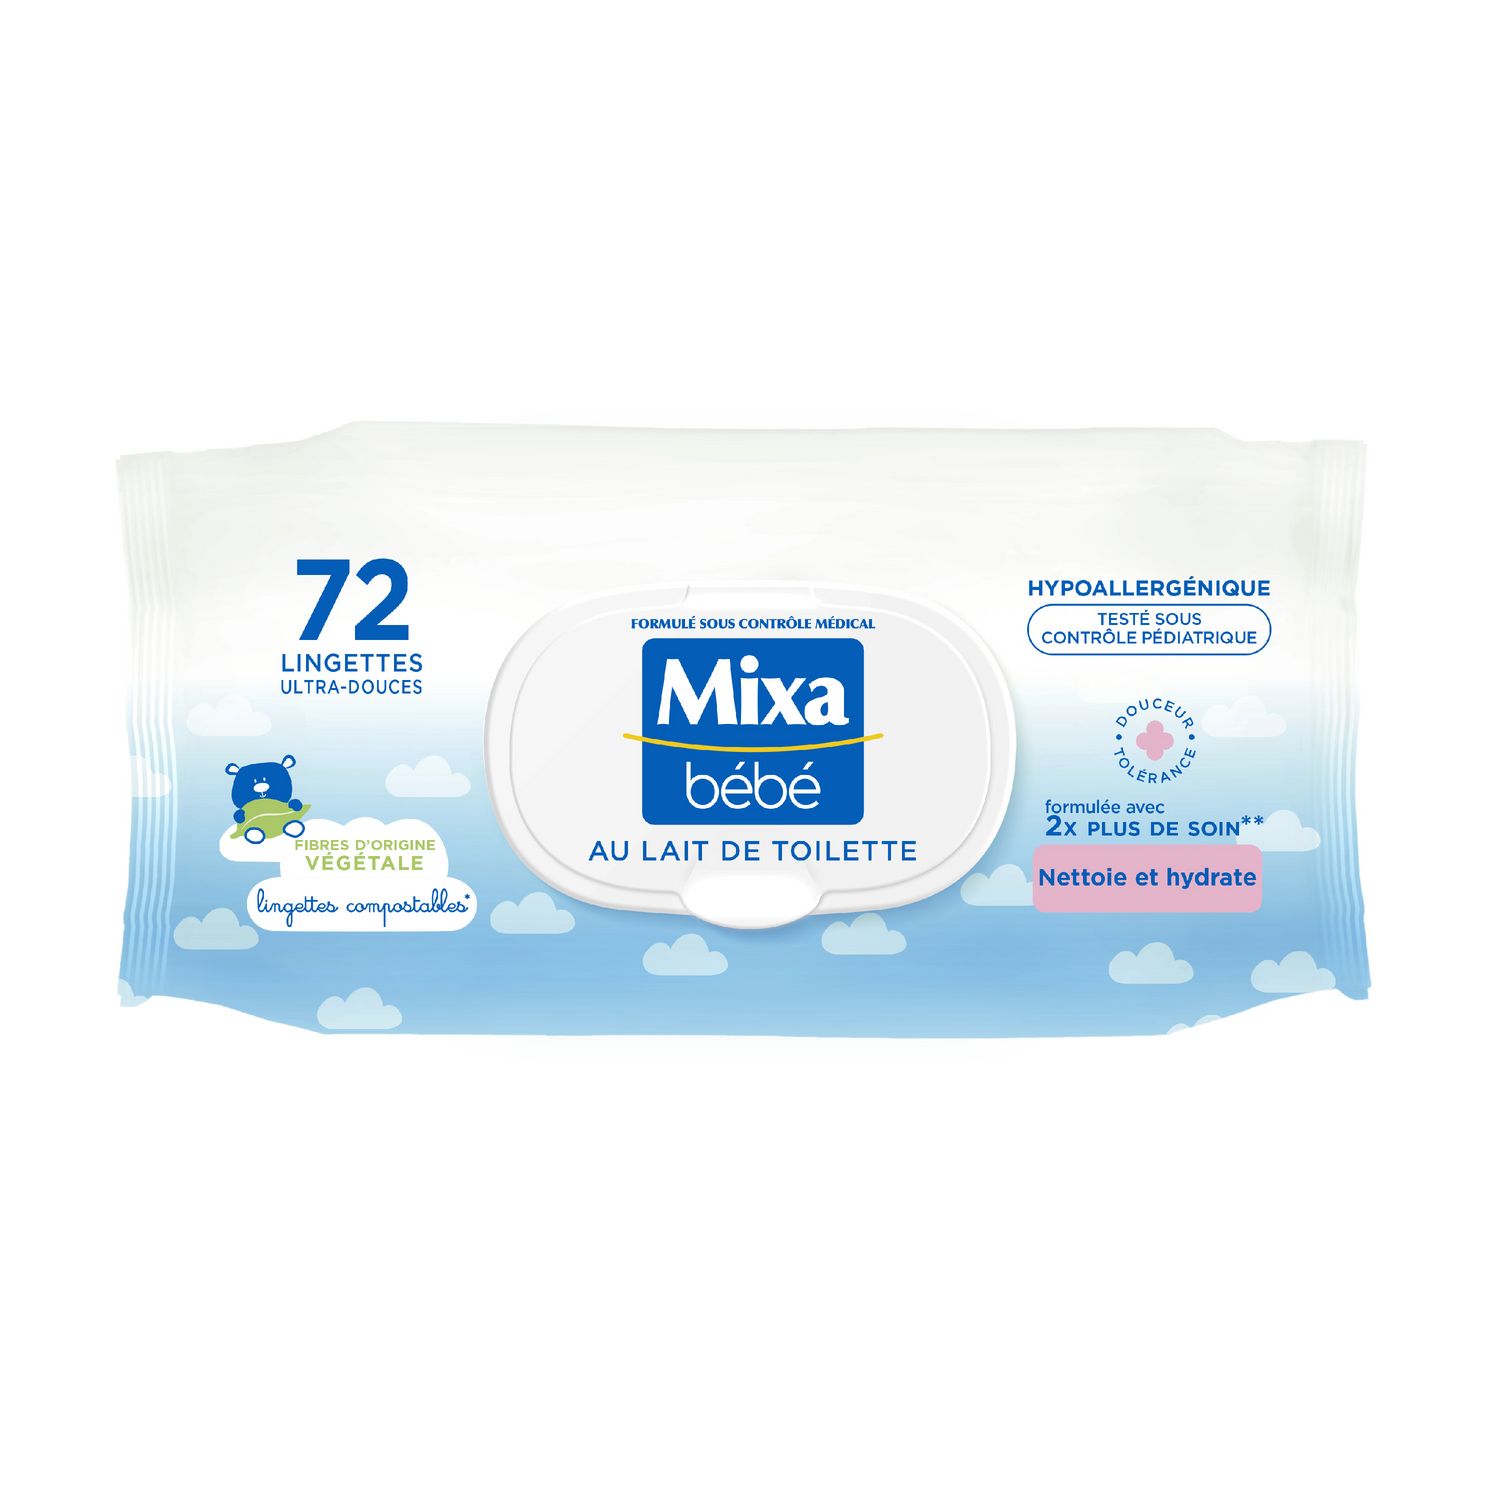 MIXA BEBE Lingettes ultra-douces hypoallergénique 72 lingettes pas